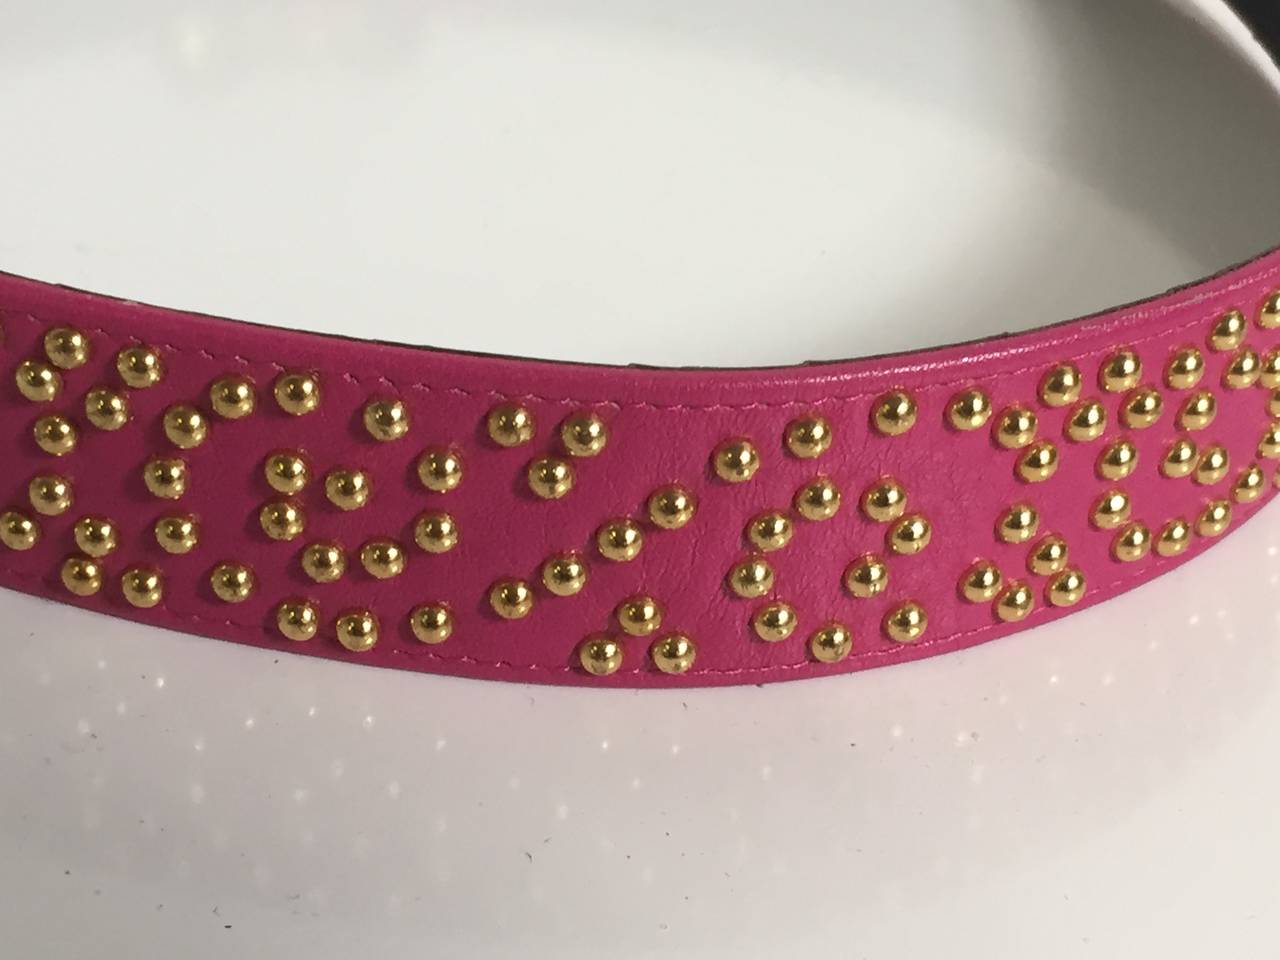 pink and black studded belt